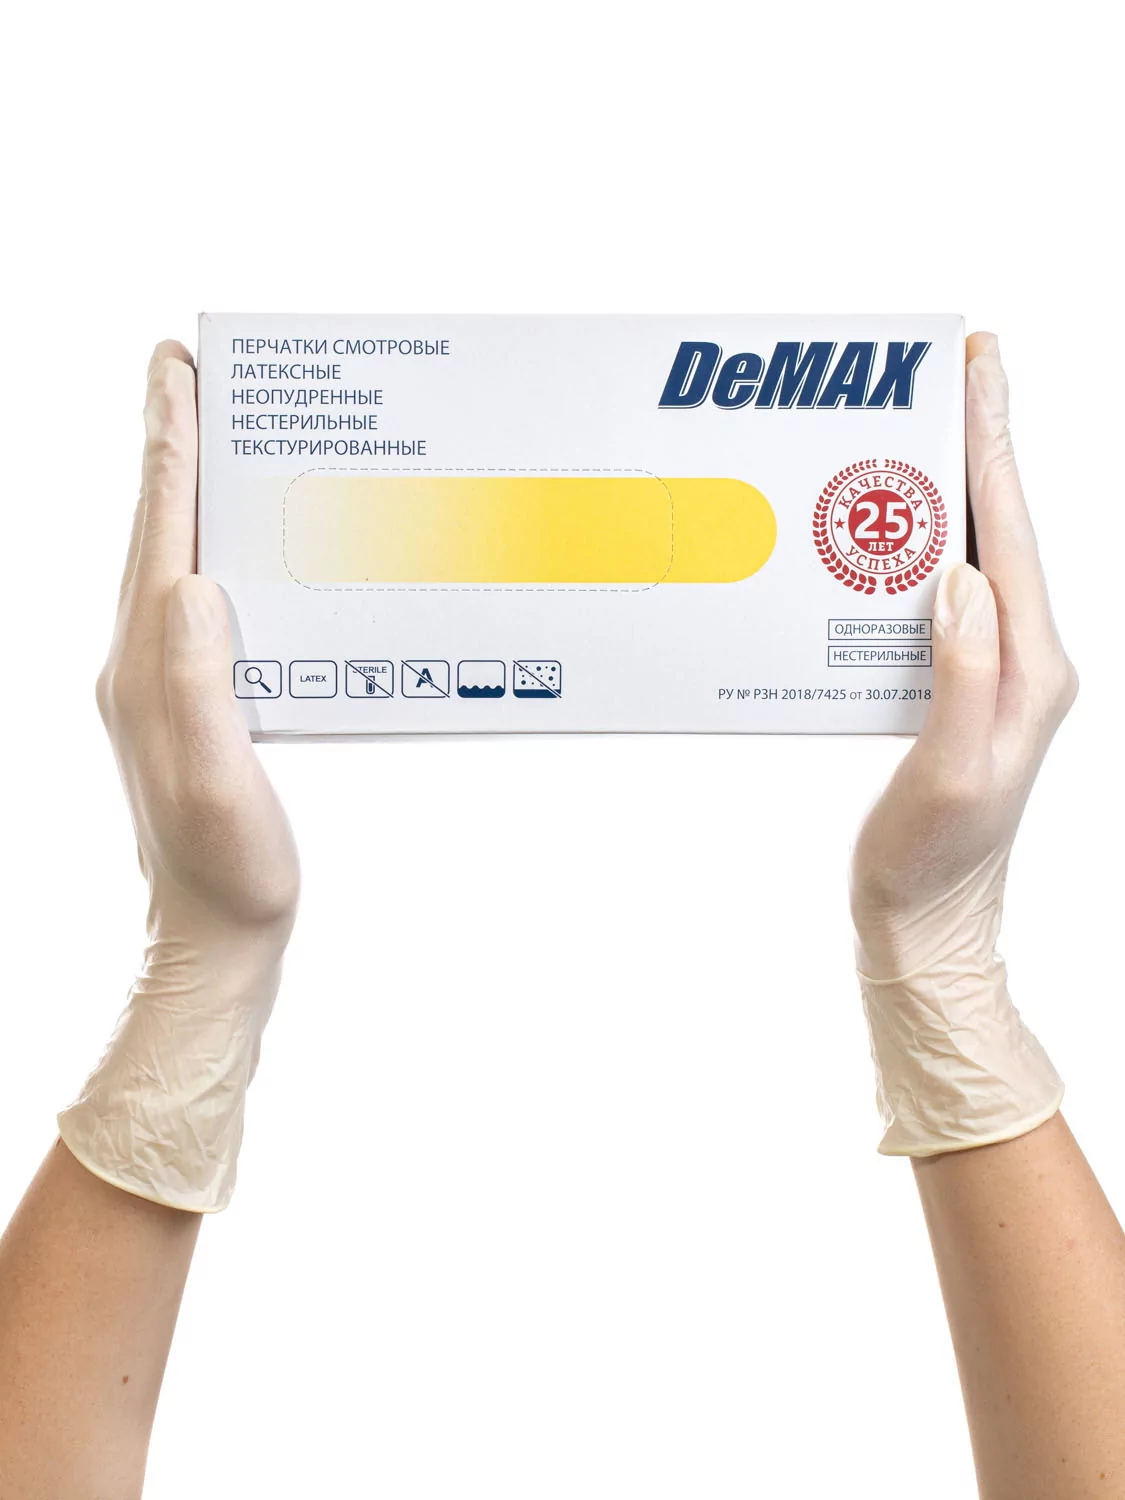 Перчатки DeMAX с полимерным покрытием смотровые латекс нестерил.неопудр.текстур., цвет: св.-желтый, 50 пар, р-р XS